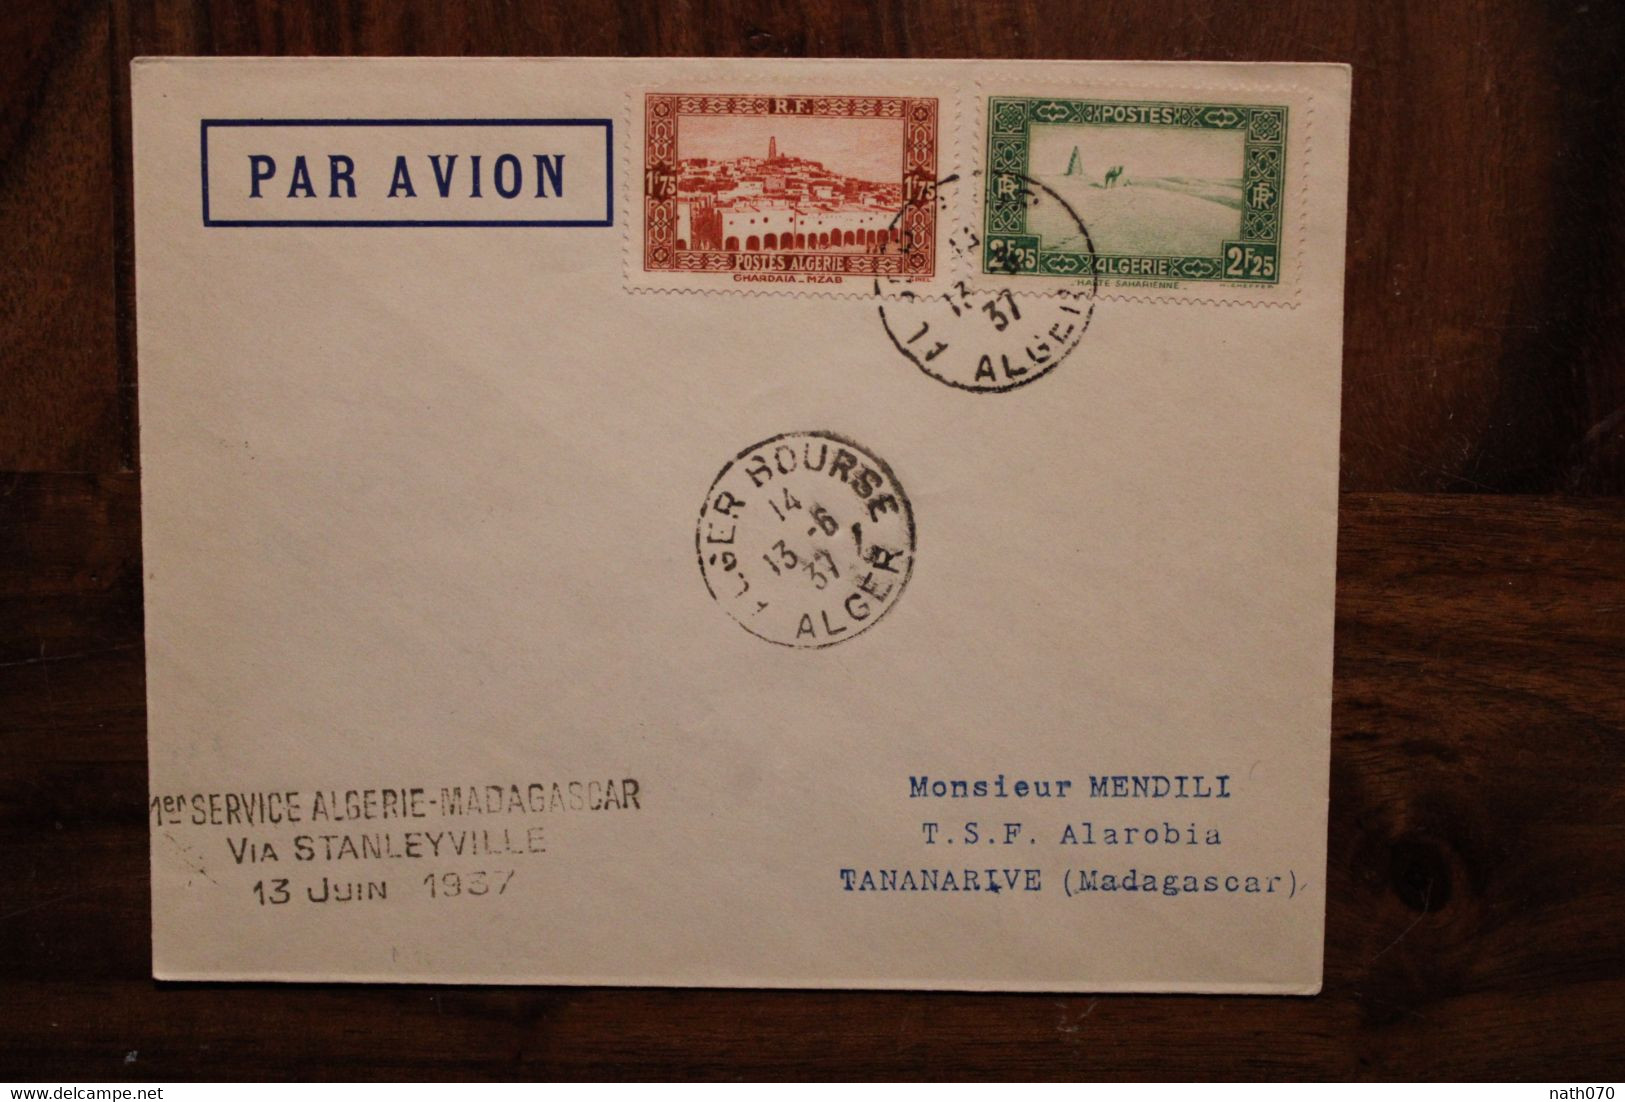 1937 1er Service Algérie Madagascar France Via Stanleyville  Enveloppe Cover Colonie Par Avion Air Mail - Aéreo